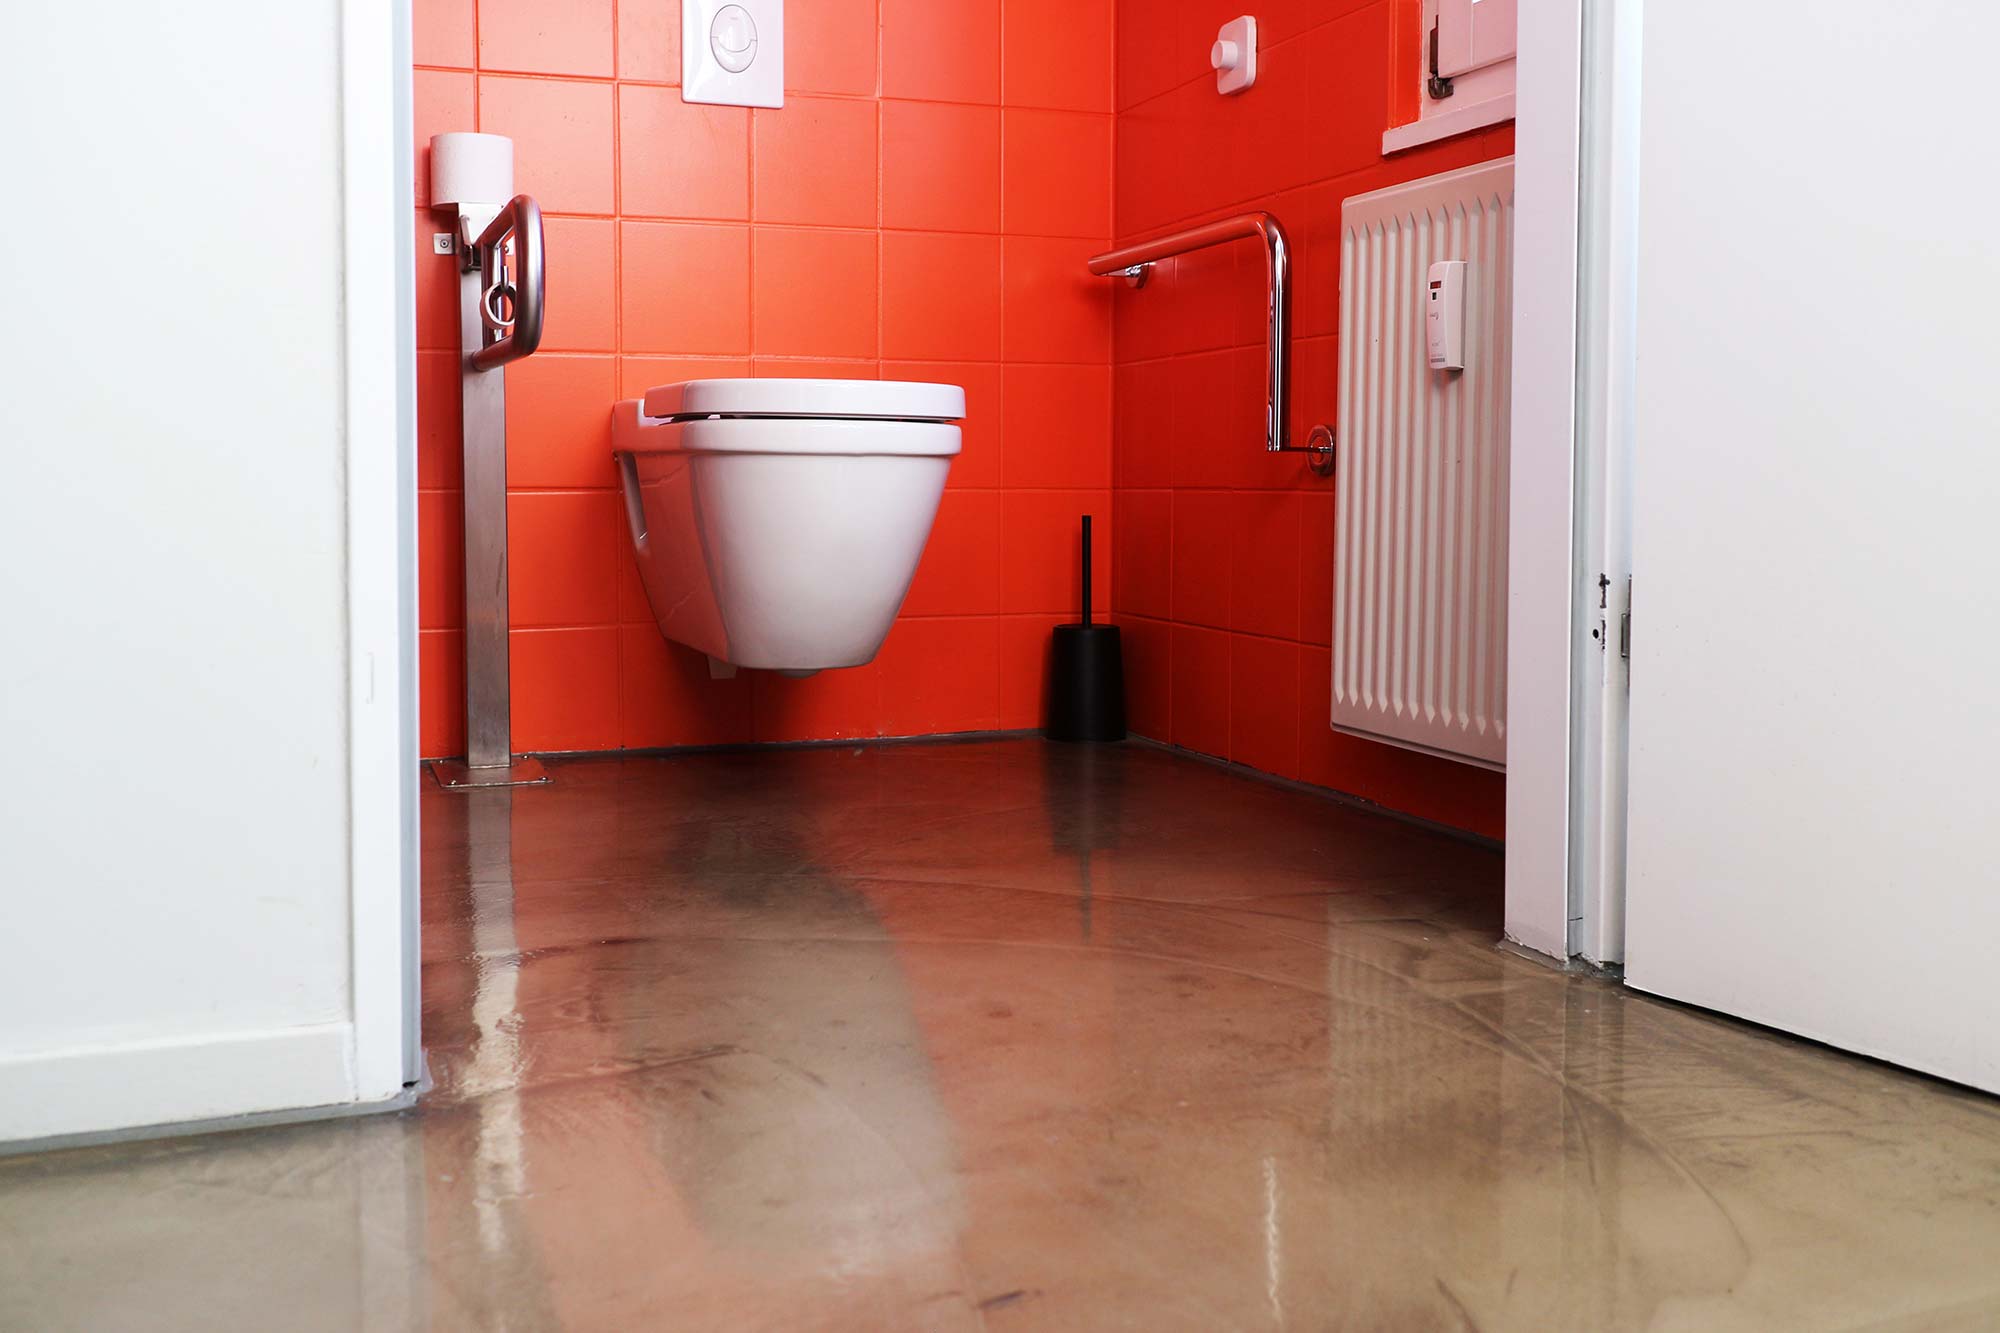 Die breite, weiße Tür zur behindertengerechten Toilette steht offen und zeigt die weiße Toilette neben der sich zwei silberne Haltegriffe befinden; die Wand ist ist in einem grellen Orange gefliest und der Boden hat eine glänzende beige Farbe; an der rechten Seite an der Wand direkt hinter der Tür ist ein kleiner weißer Heizkörper